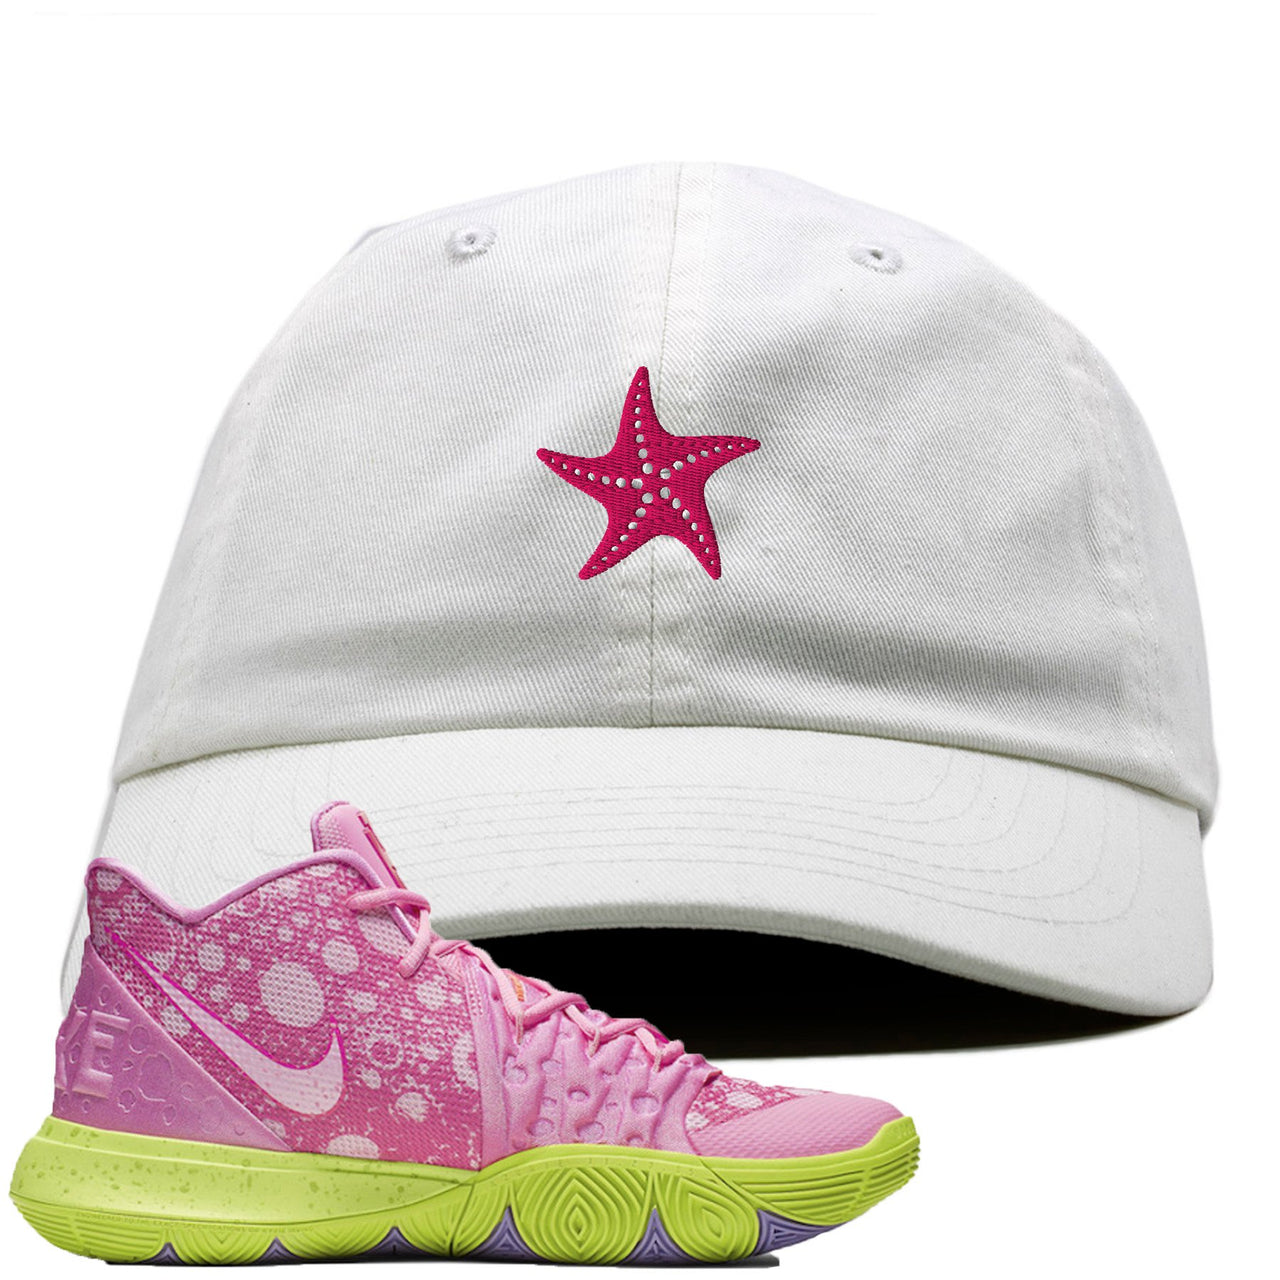 Patrick K5s Dad Hat | Starfish, White